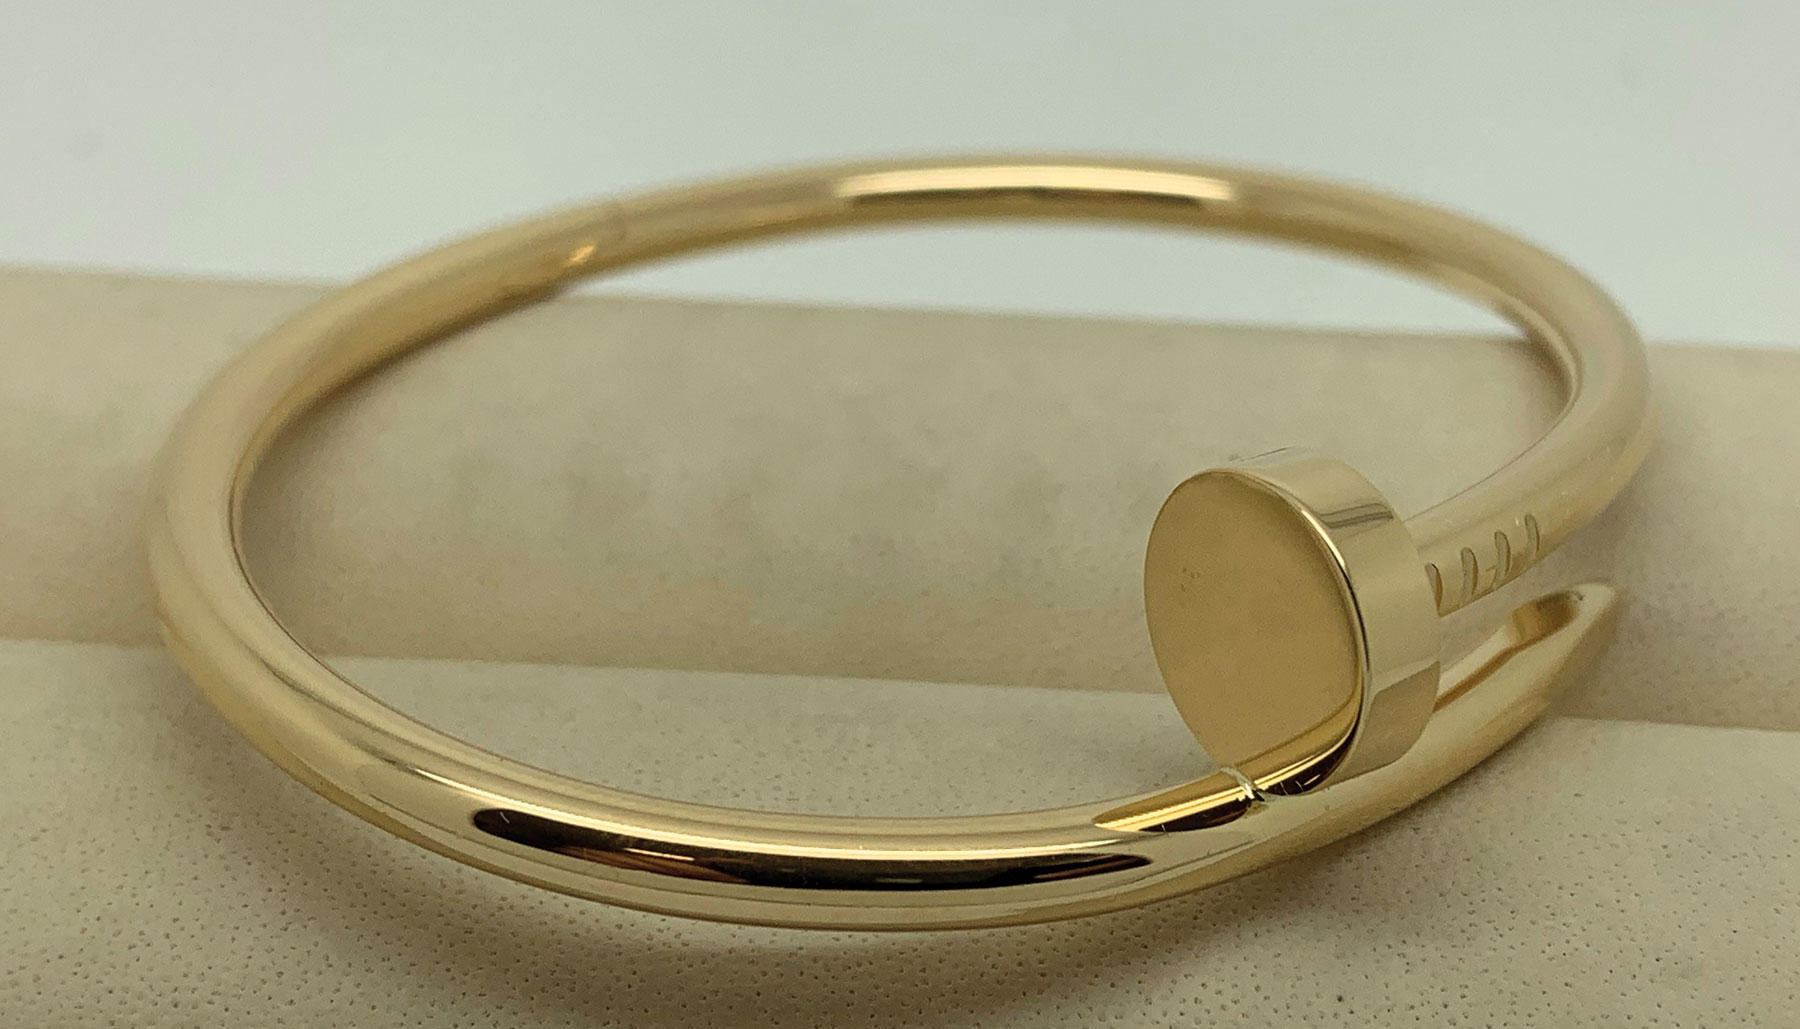 Armband aus Gold